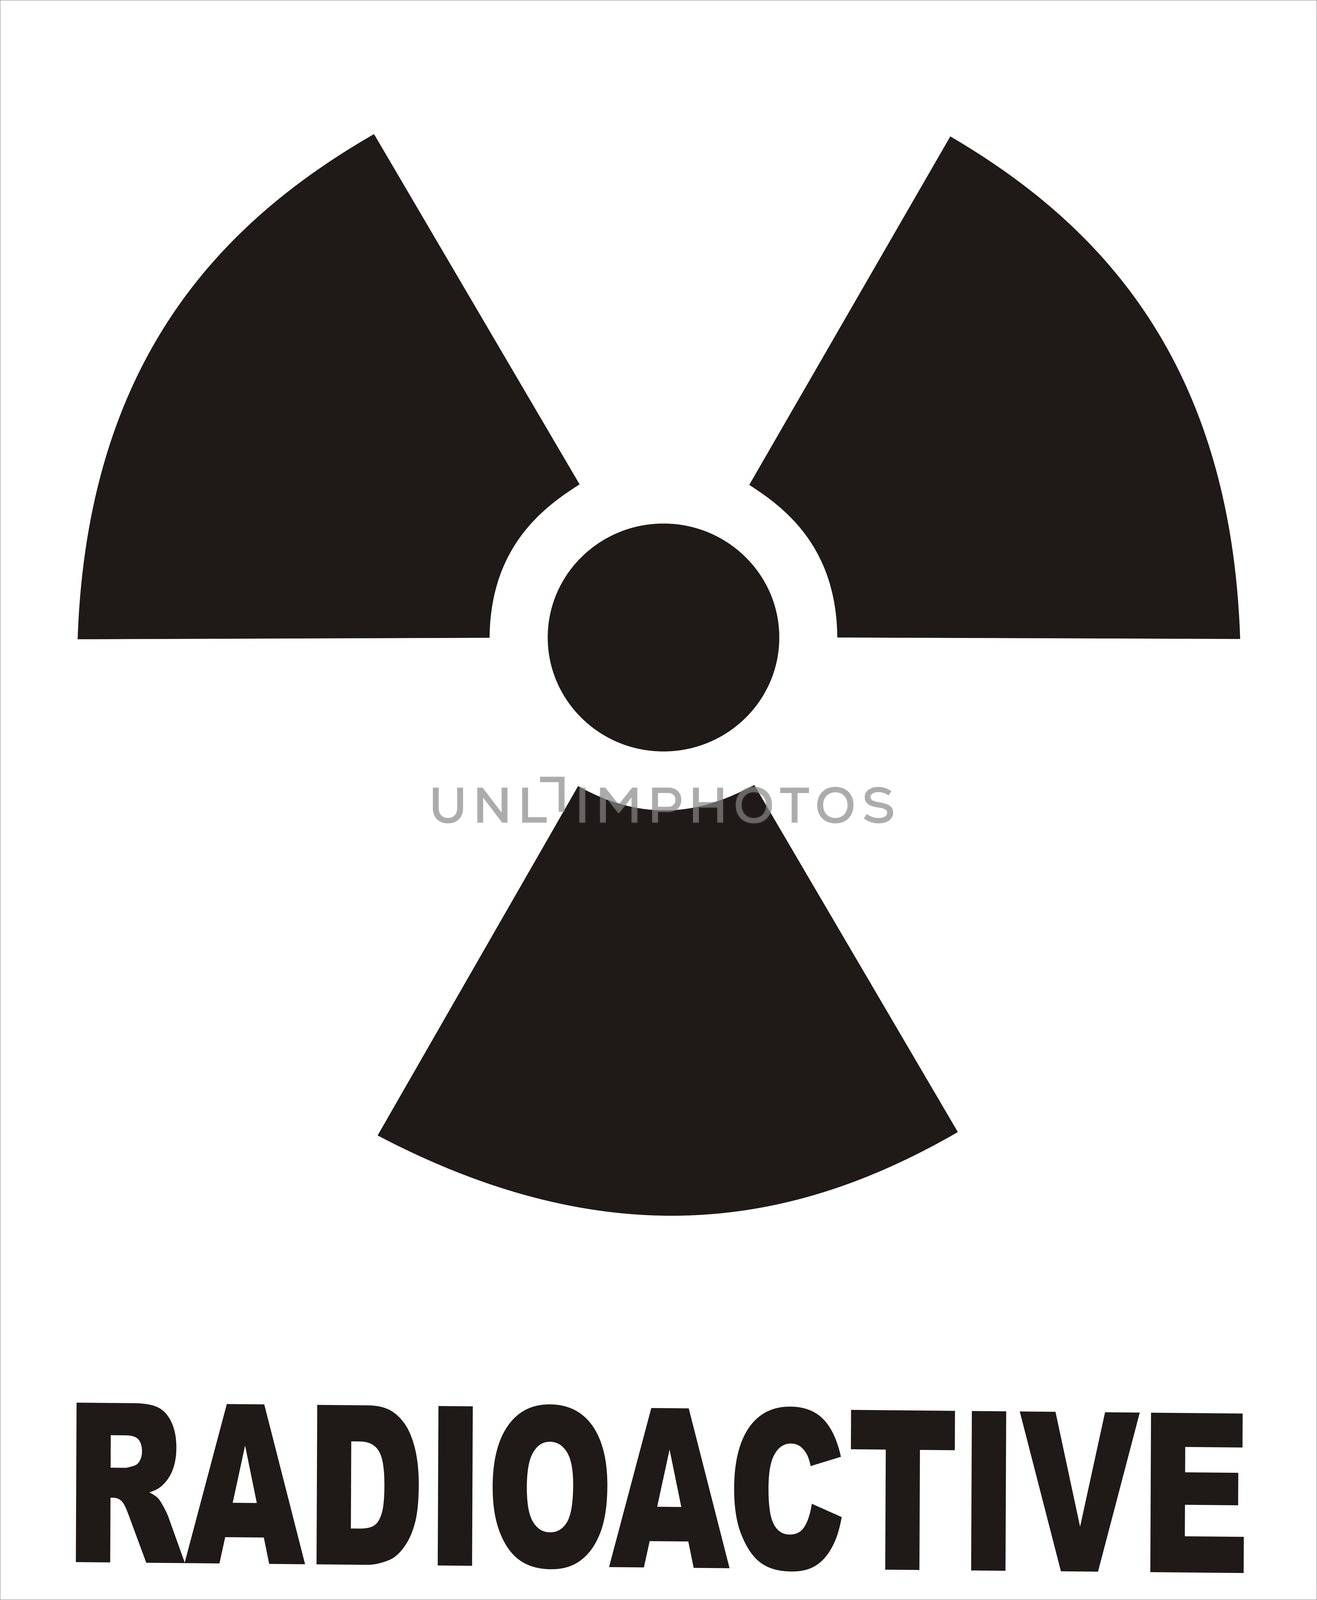 Radioactive by tony4urban